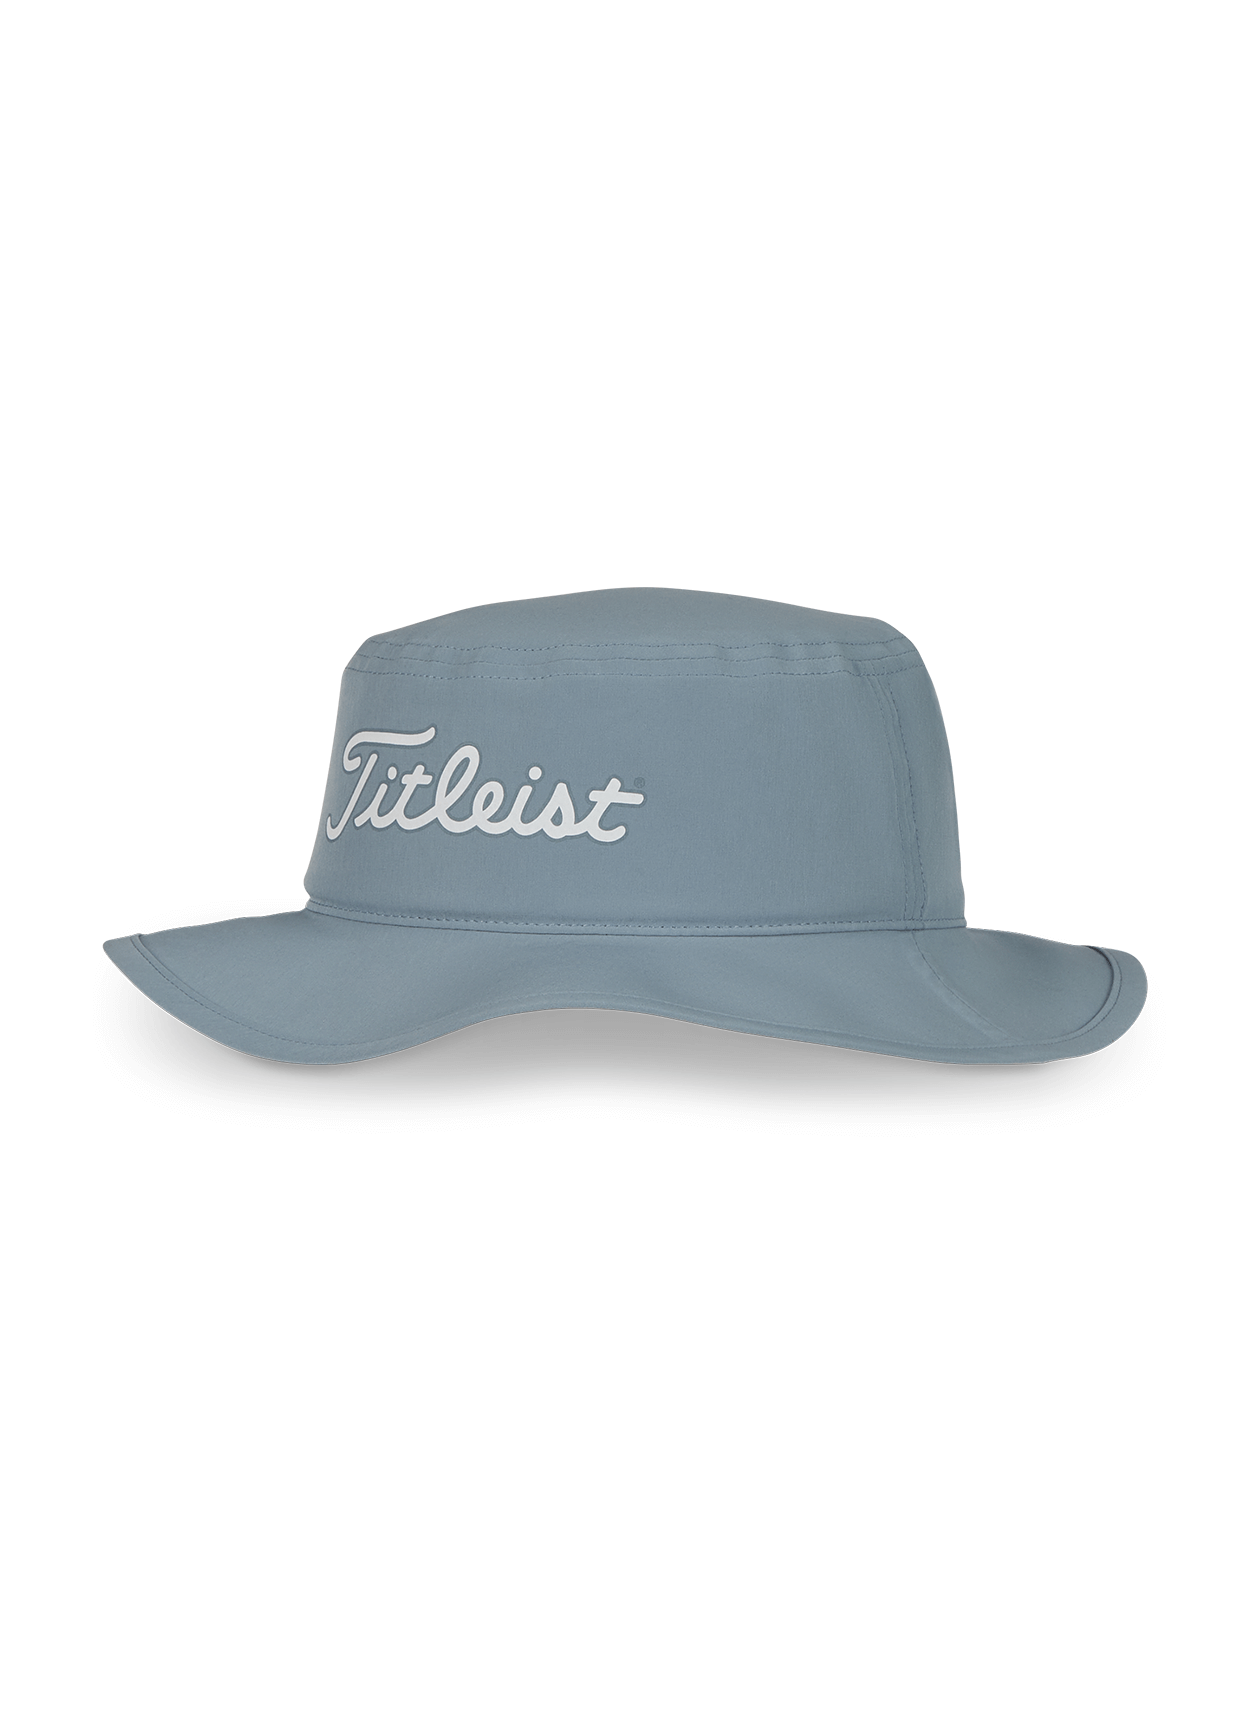 TITLEIST Vintage Golfing Hat Men's One Size Blue Adjustable Baseball Cap